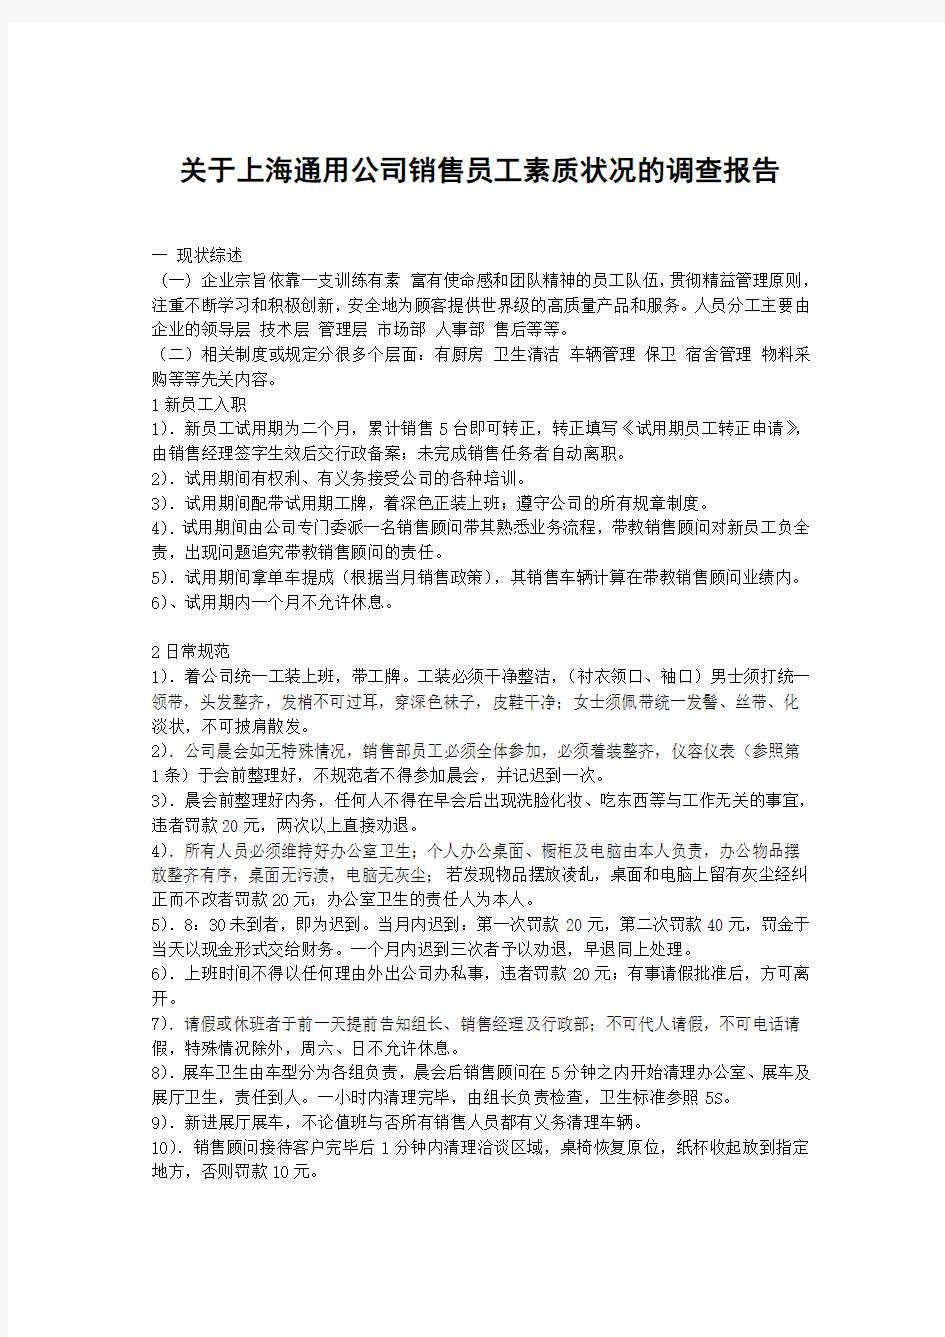 关于上海通用公司销售员工素质状况的调查报告